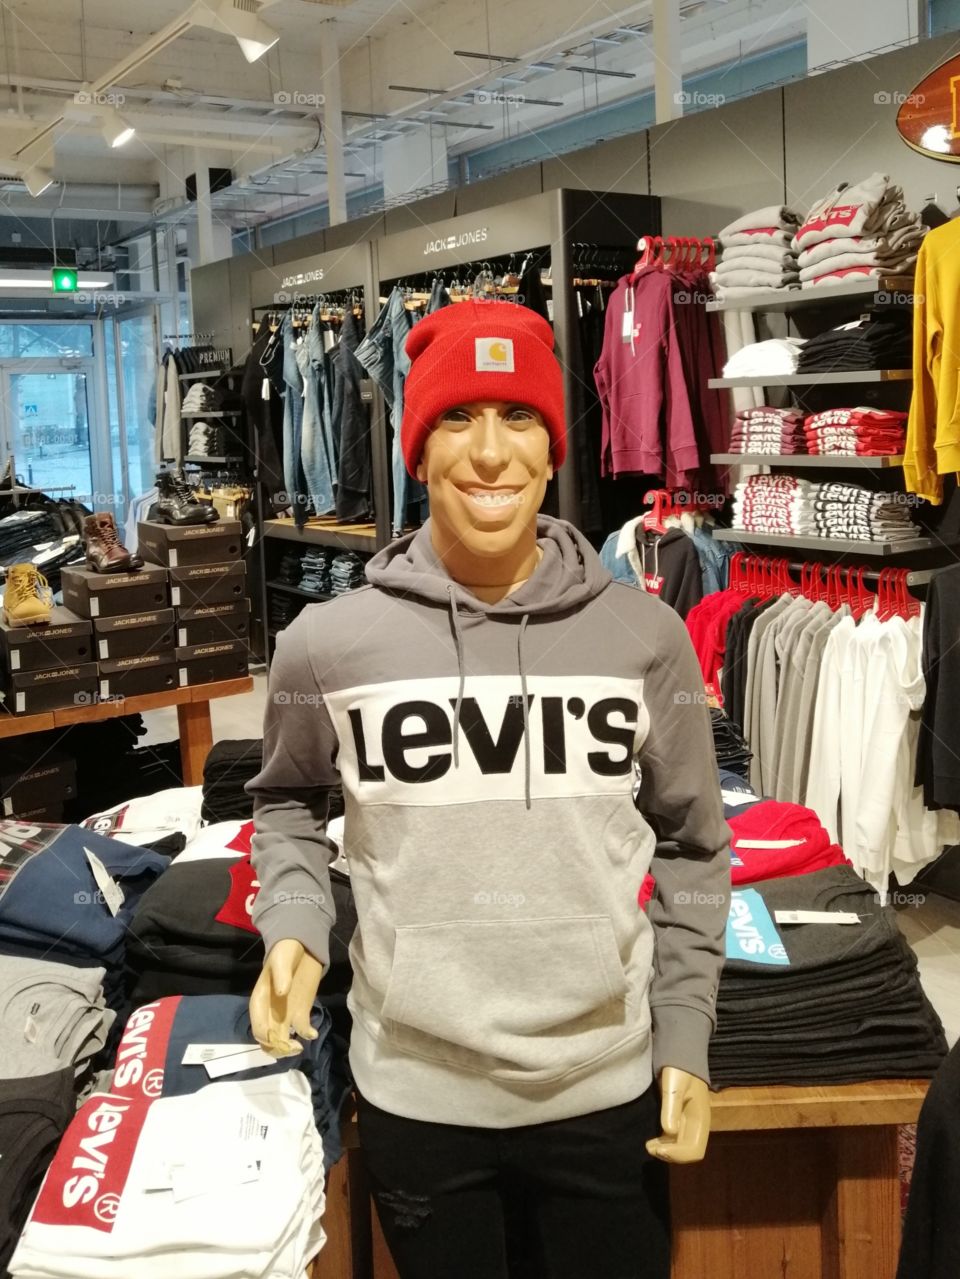 Levi's clothes